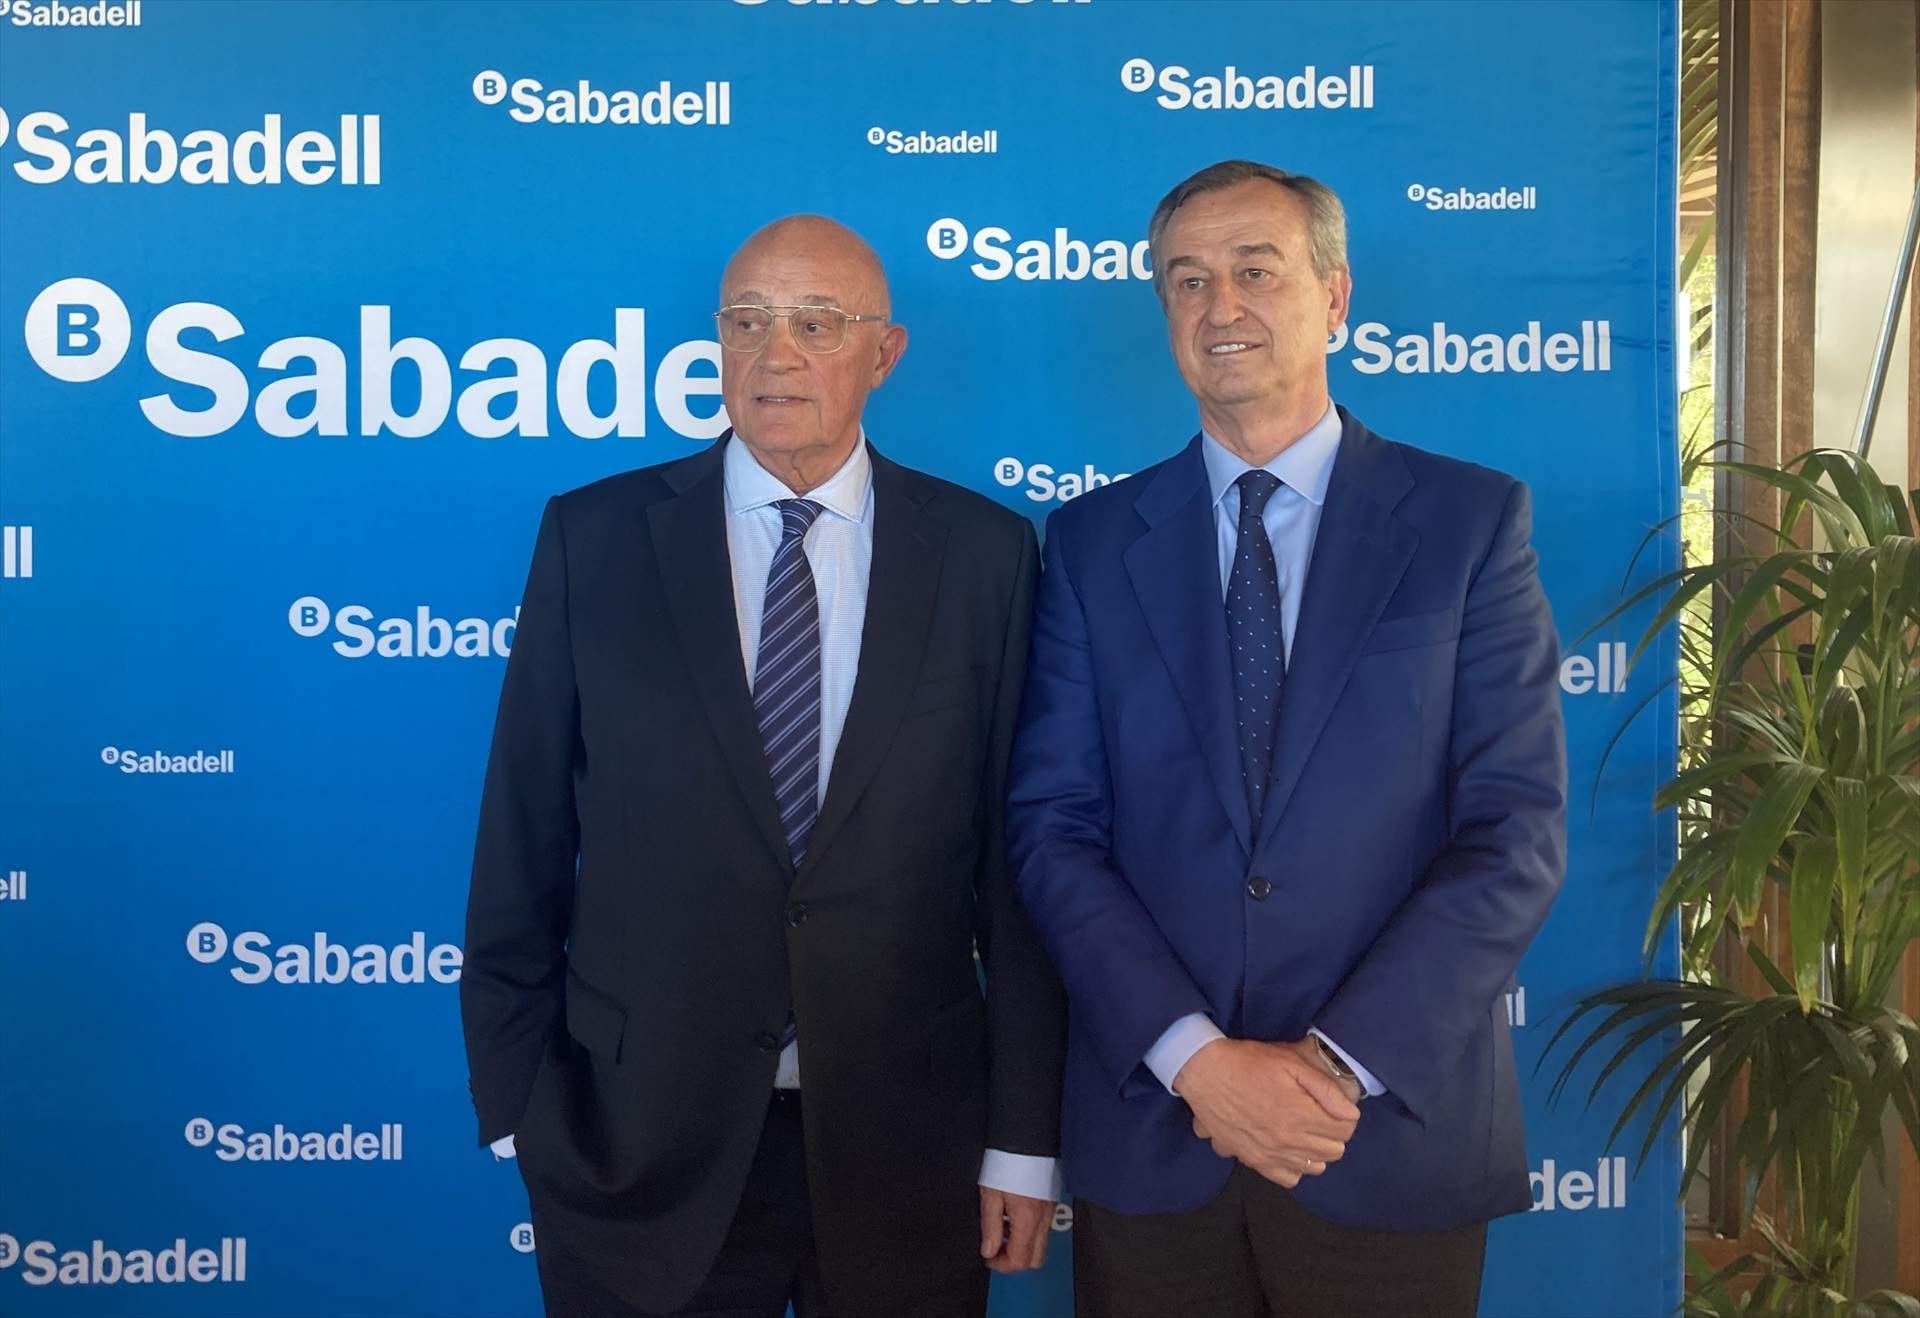 El Sabadell alerta que l'opa del BBVA l'exposa a perdre ocupació i oportunitats